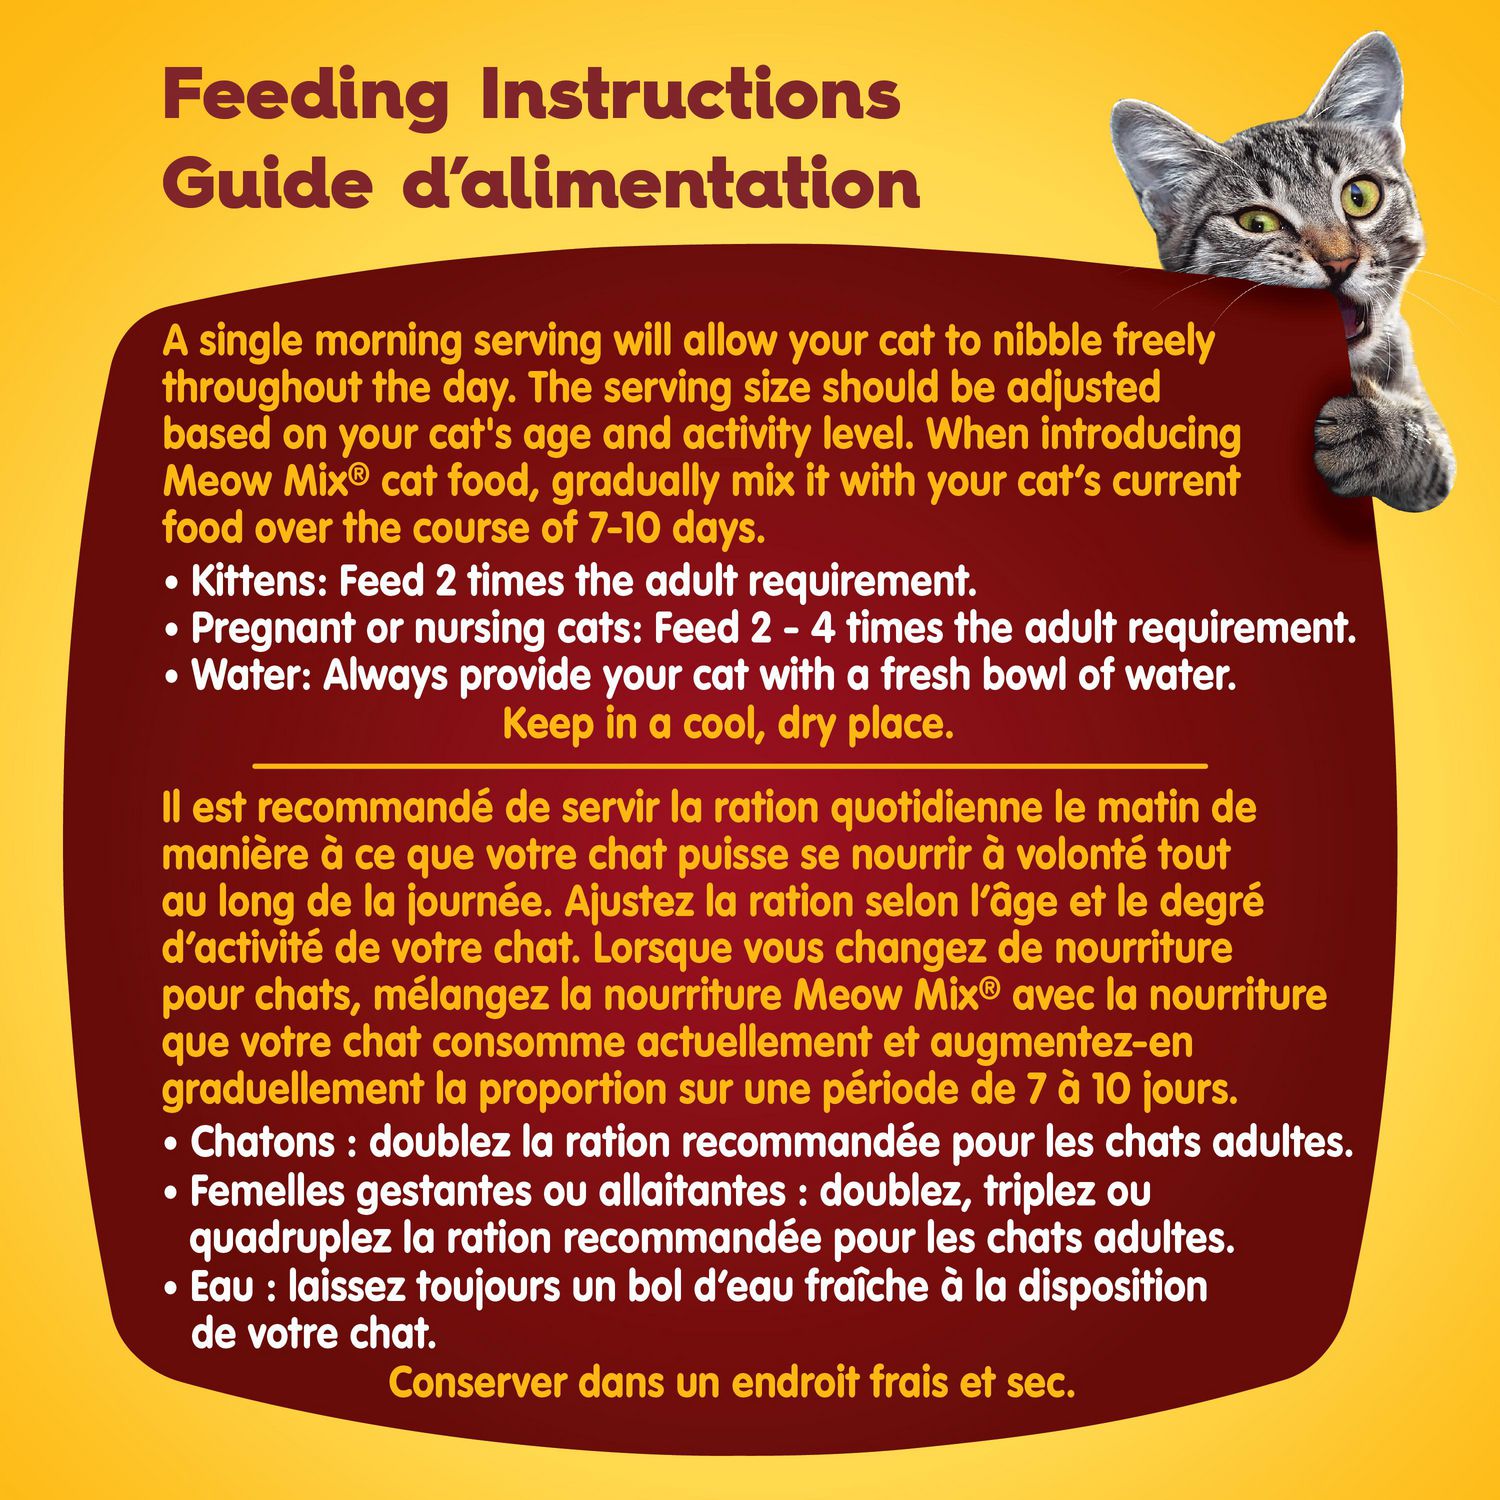 Guide d'alimentation des chats